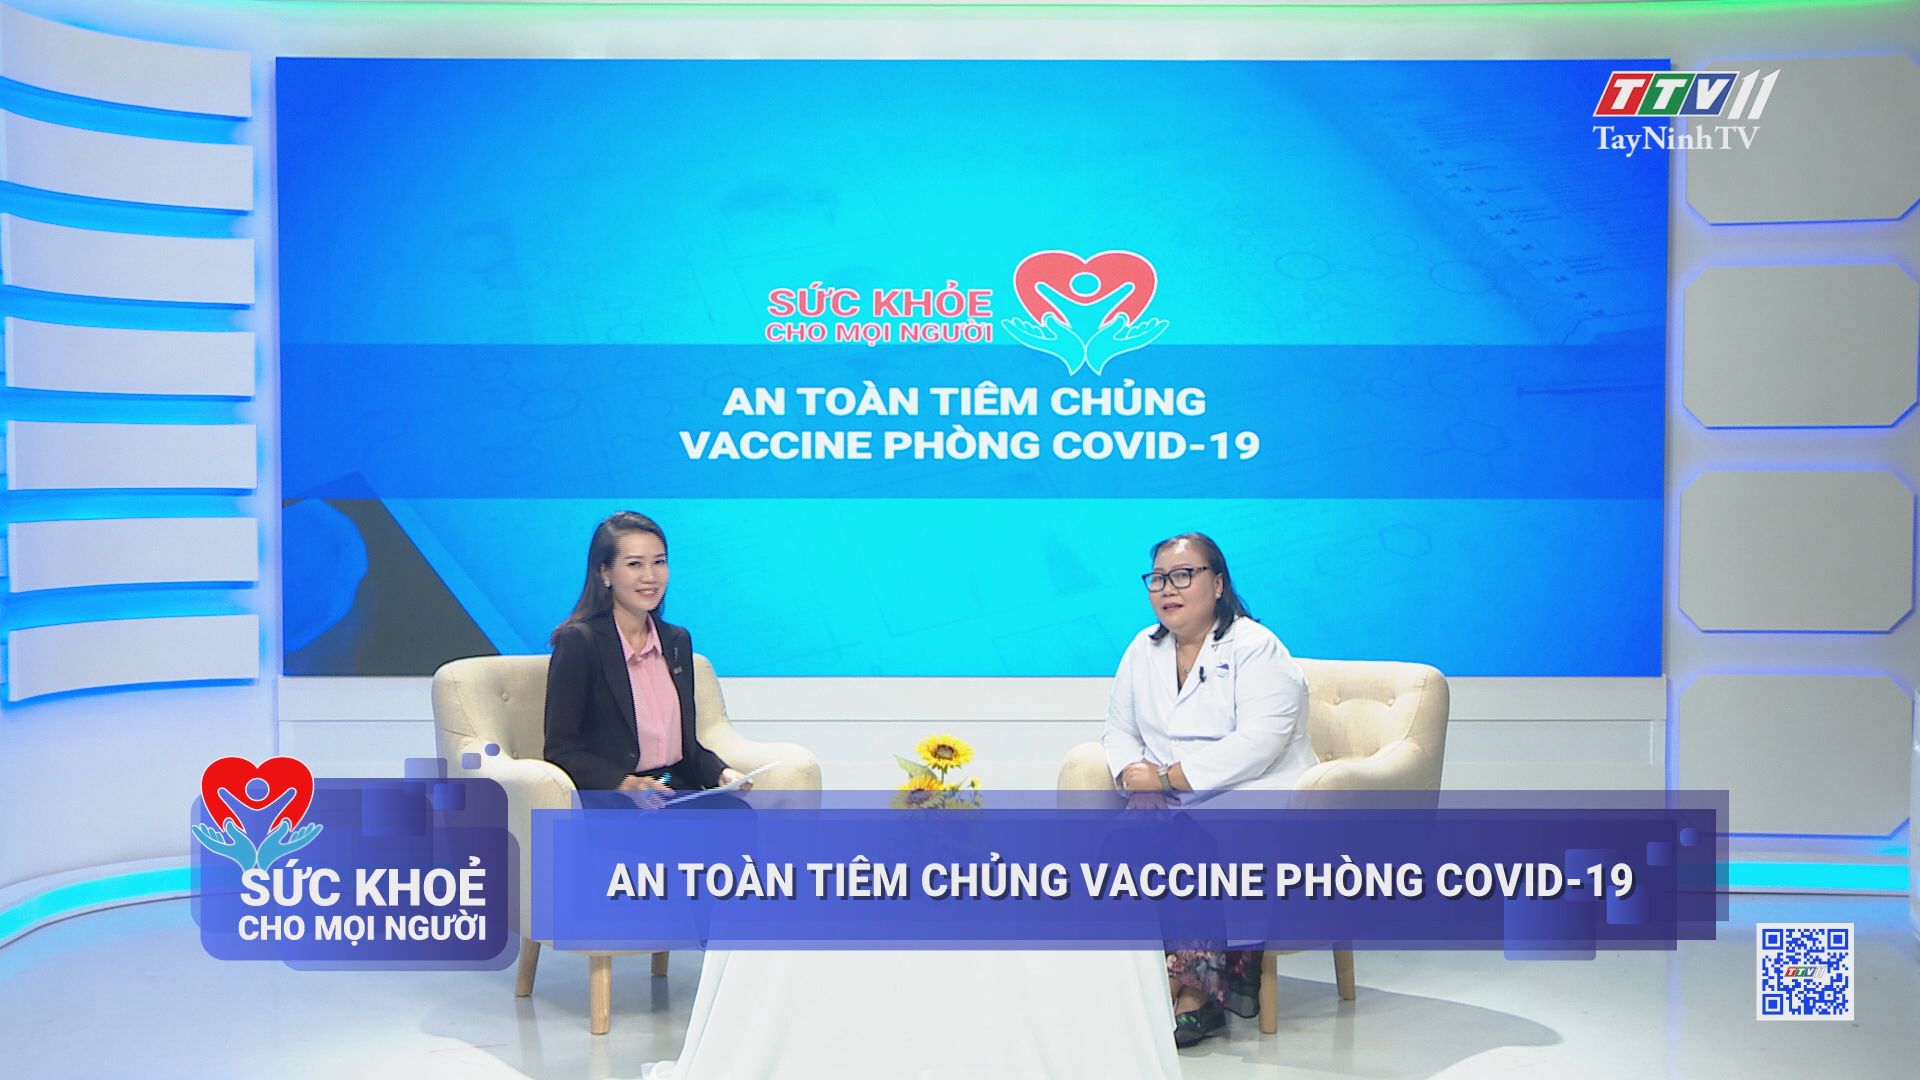 An toàn tiêm chủng vaccine phòng Covid-19 | SỨC KHỎE CHO MỌI NGƯỜI | TayNinhTV